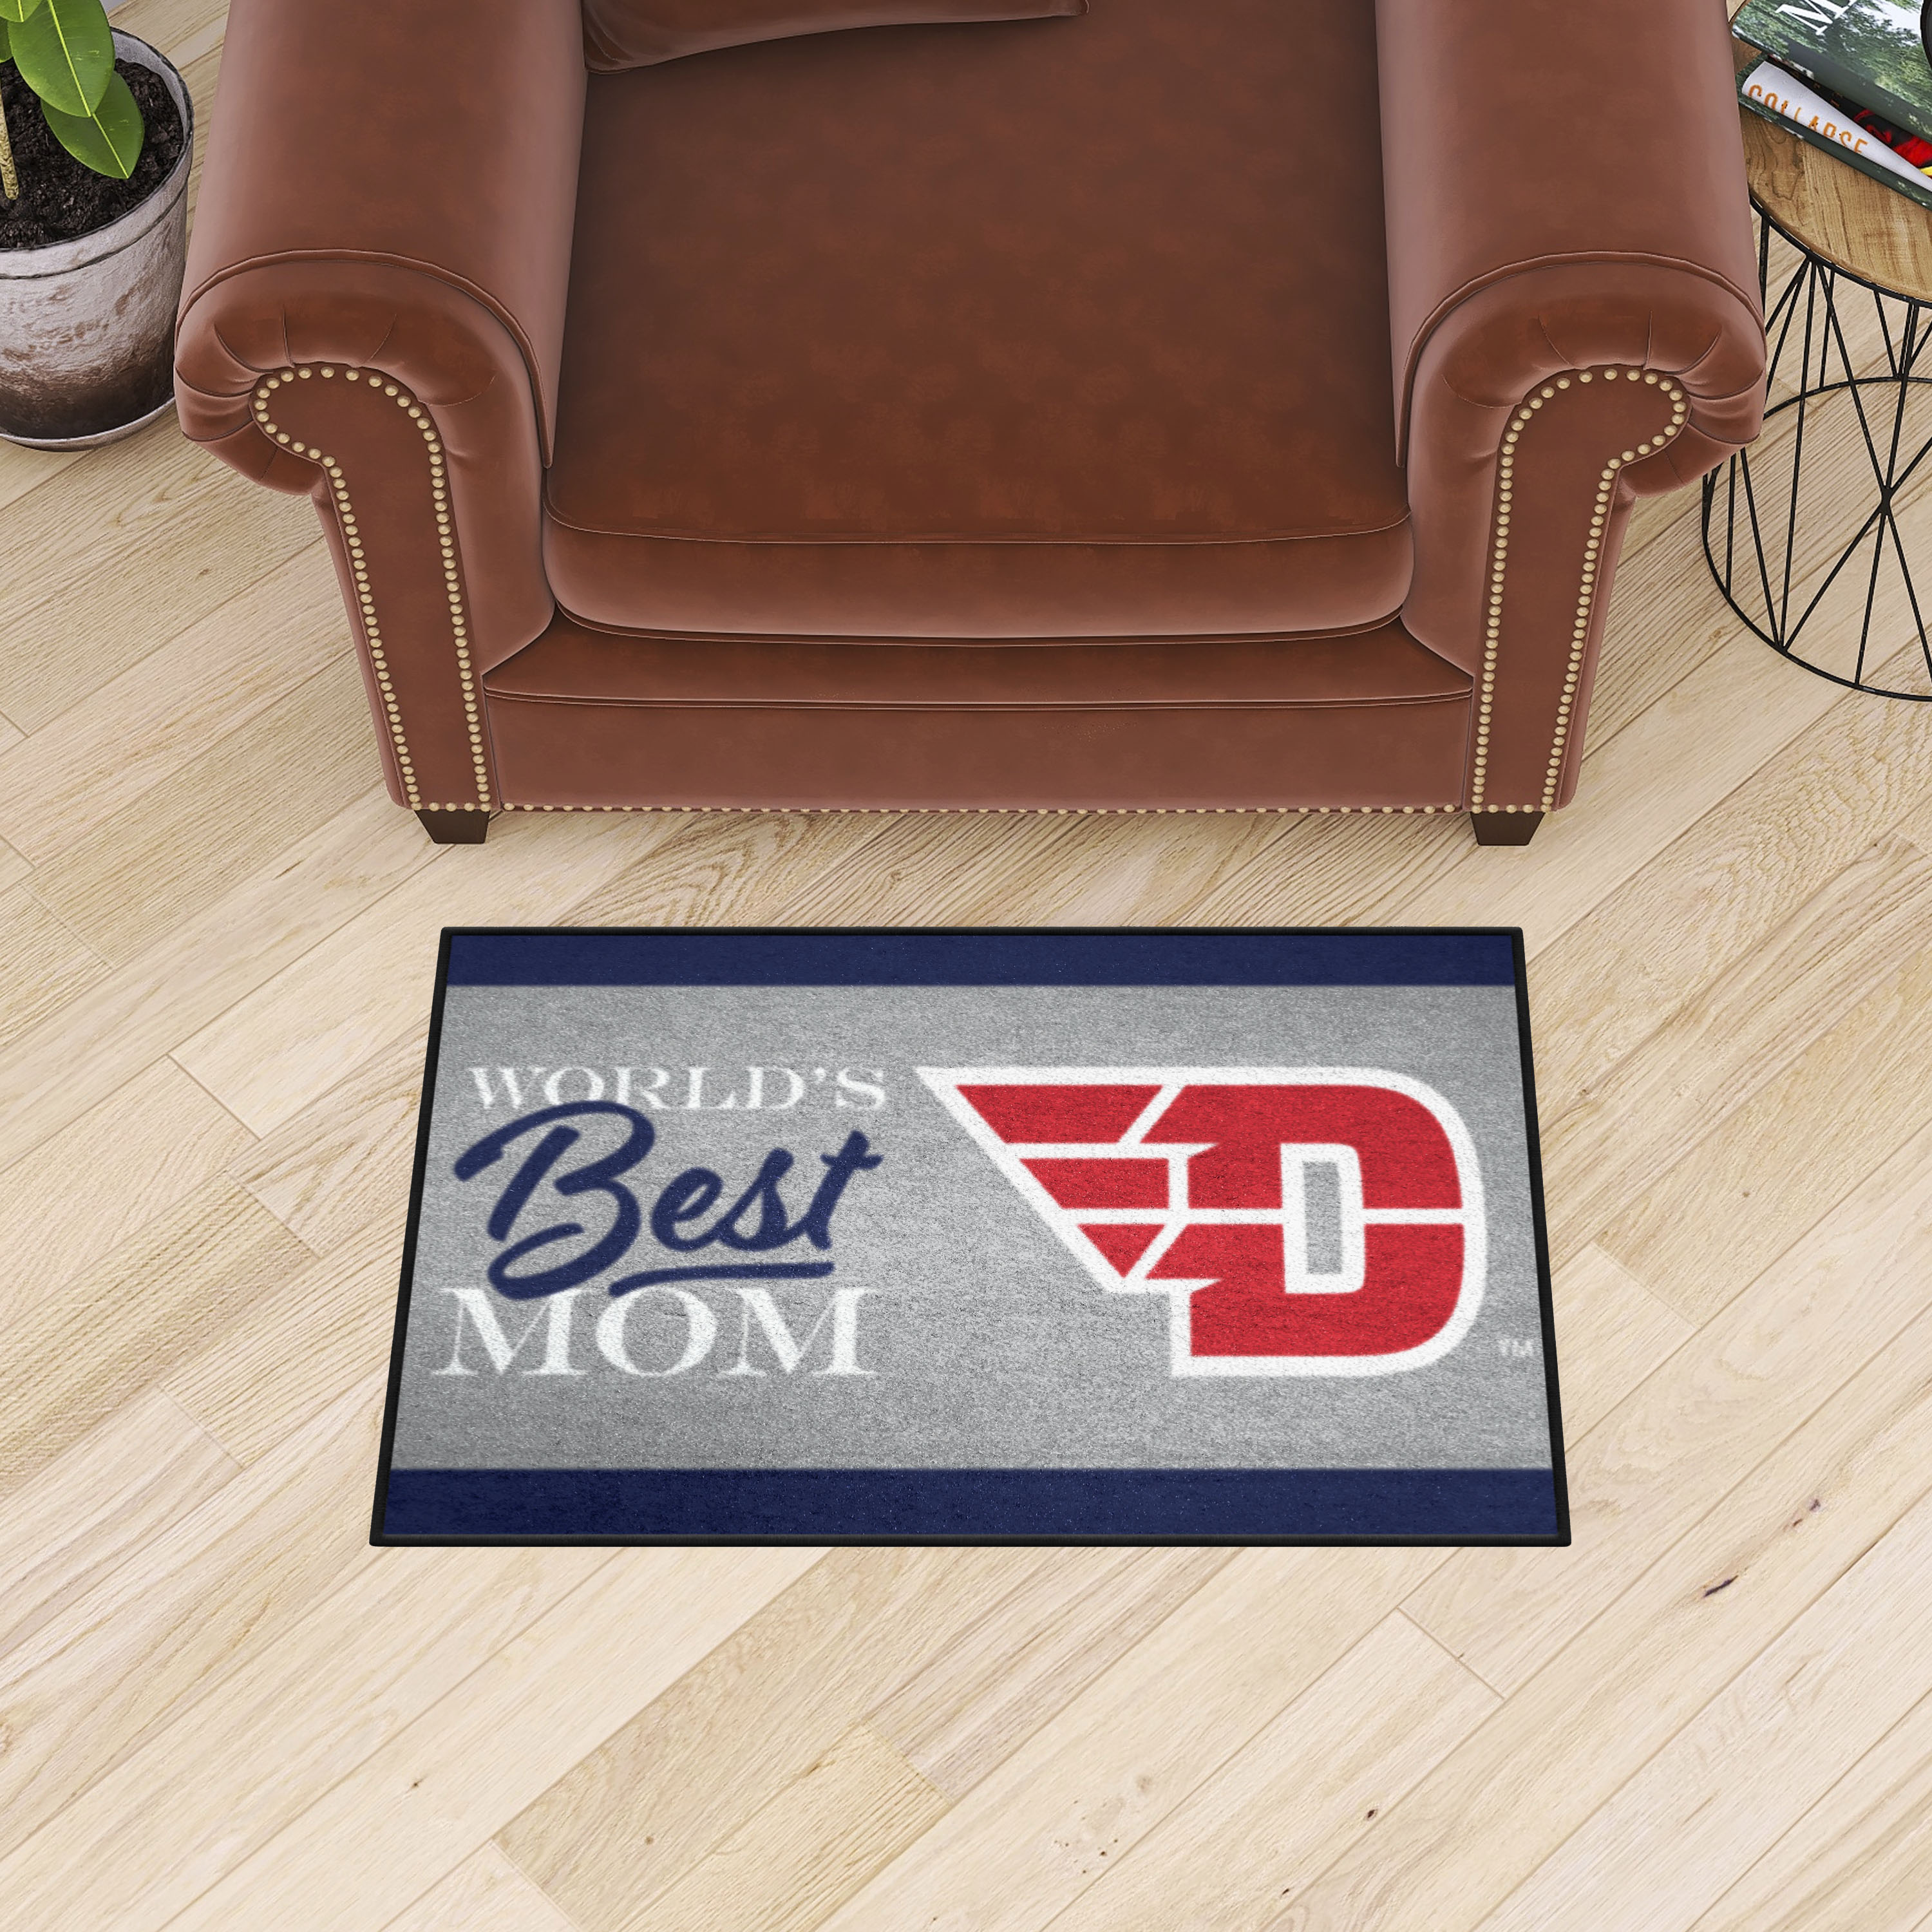 Dayton Flyers World's Best Mom Starter Doormat - 19 x 30